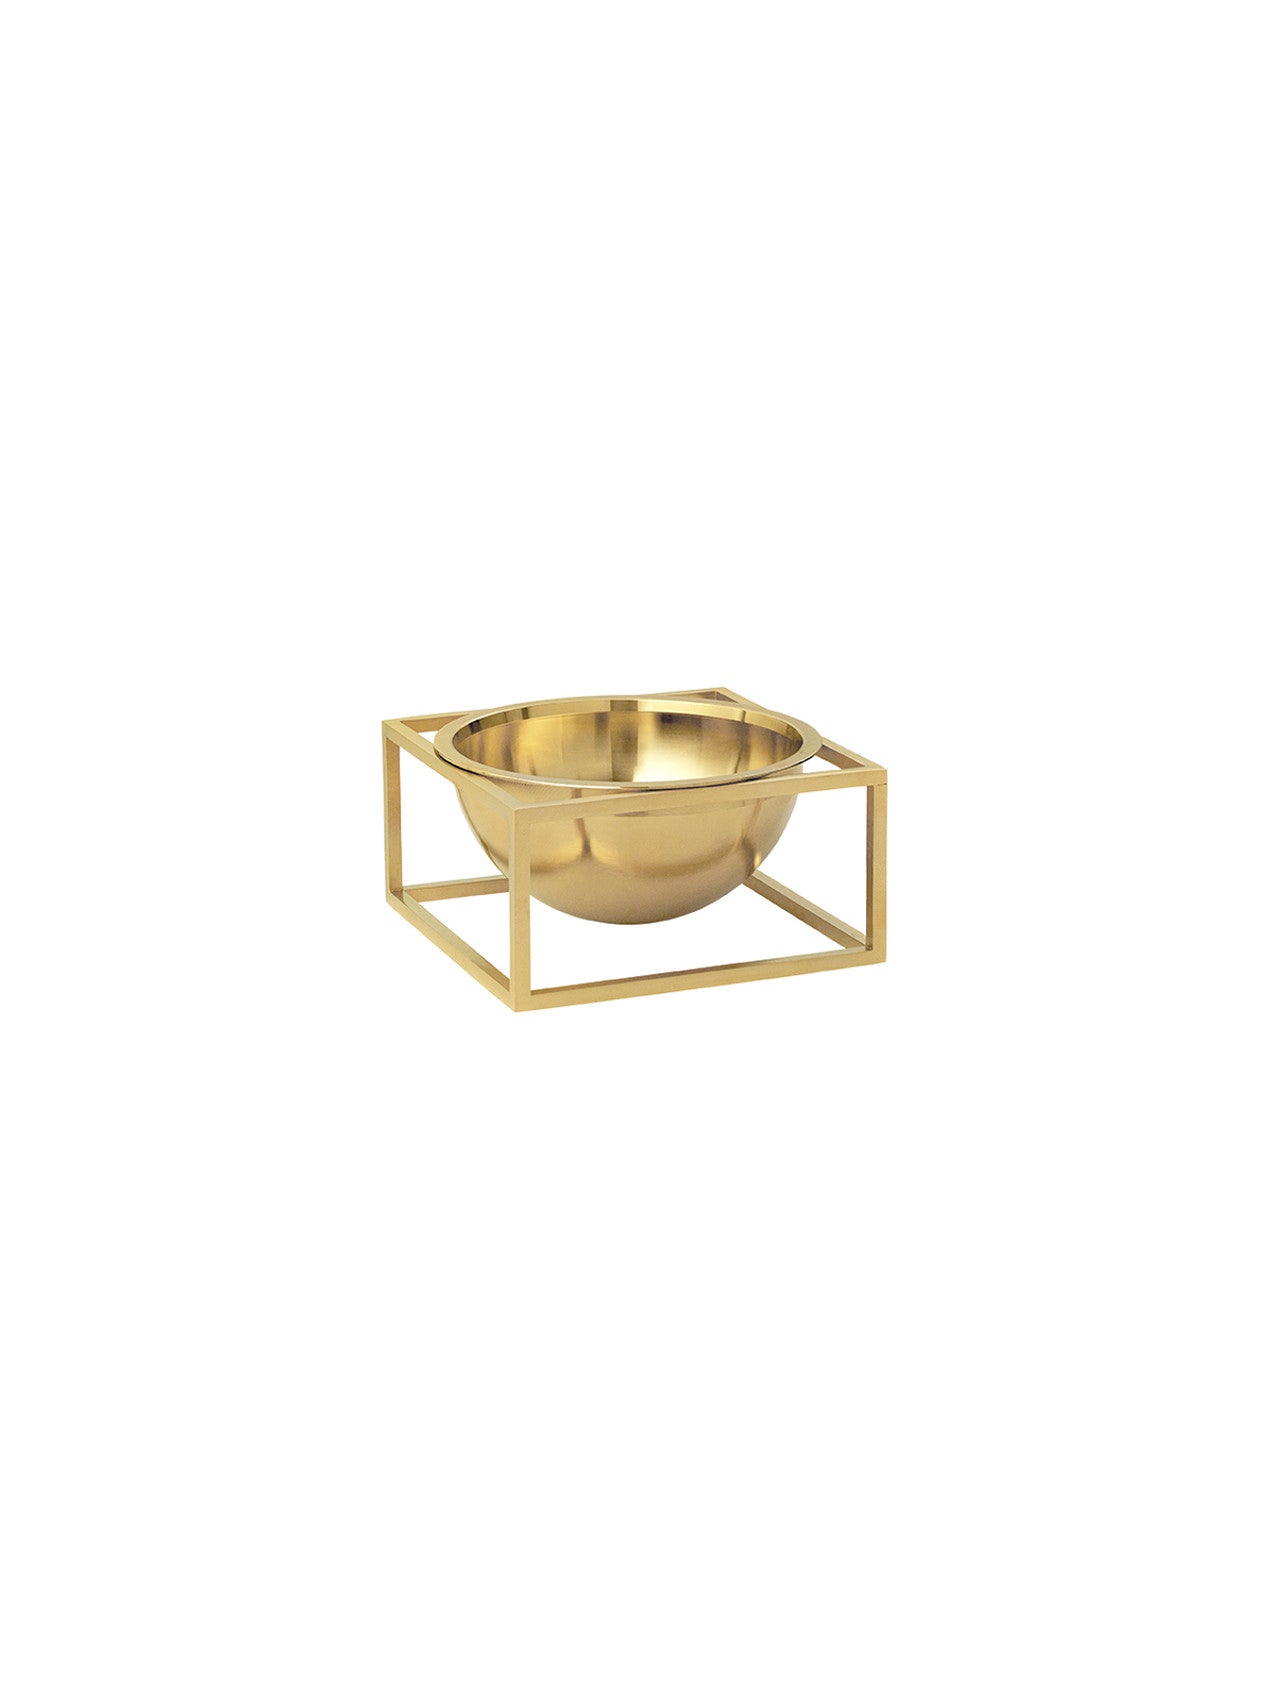 Bowl centerpiece-Decorative Bowls-MENU Design Shop